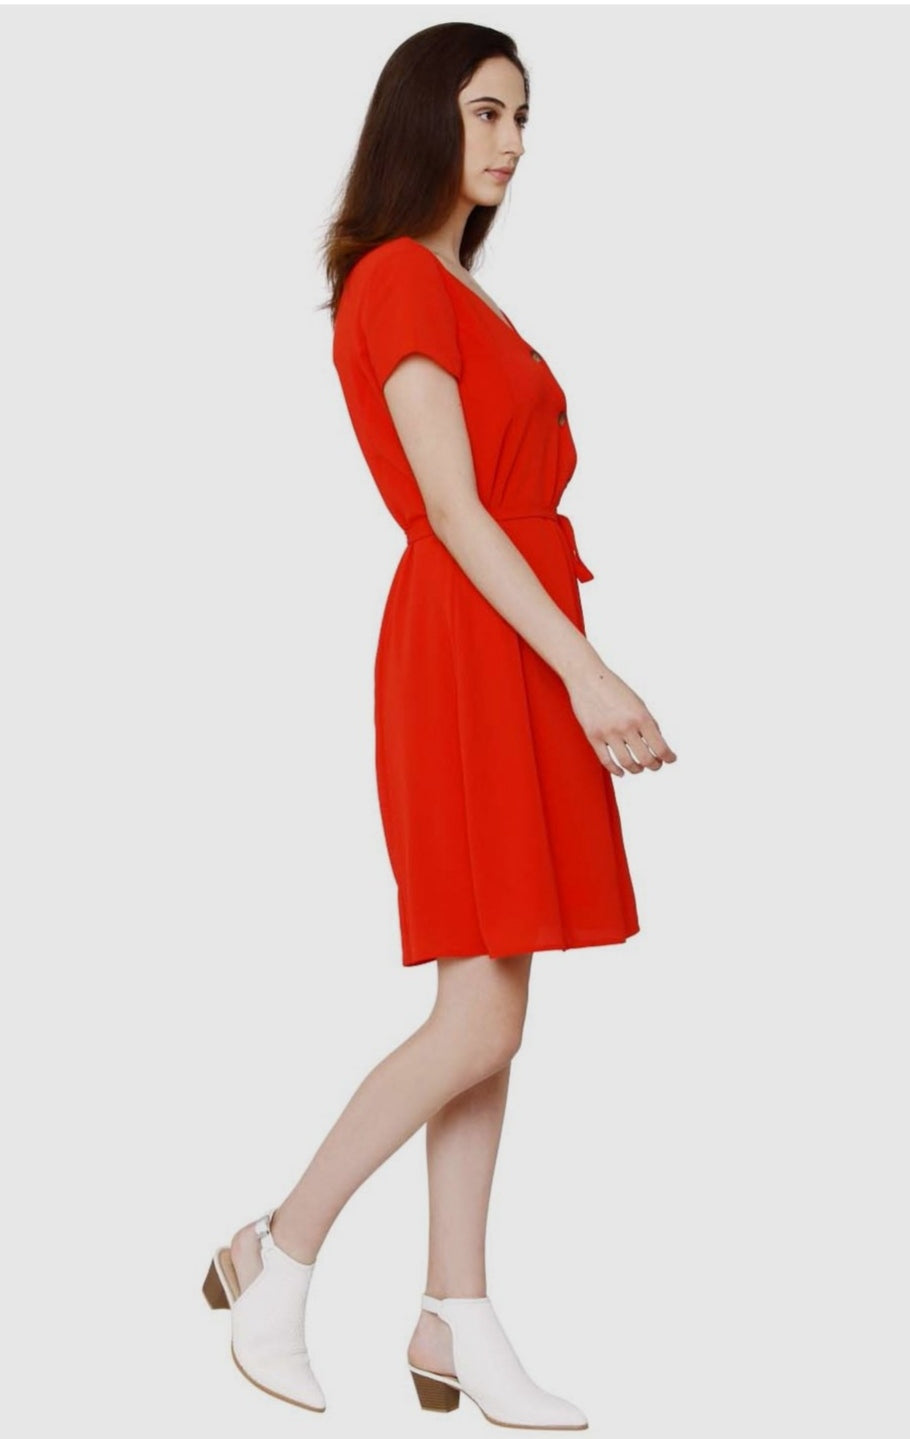 Vero Moda Red A Line Dress